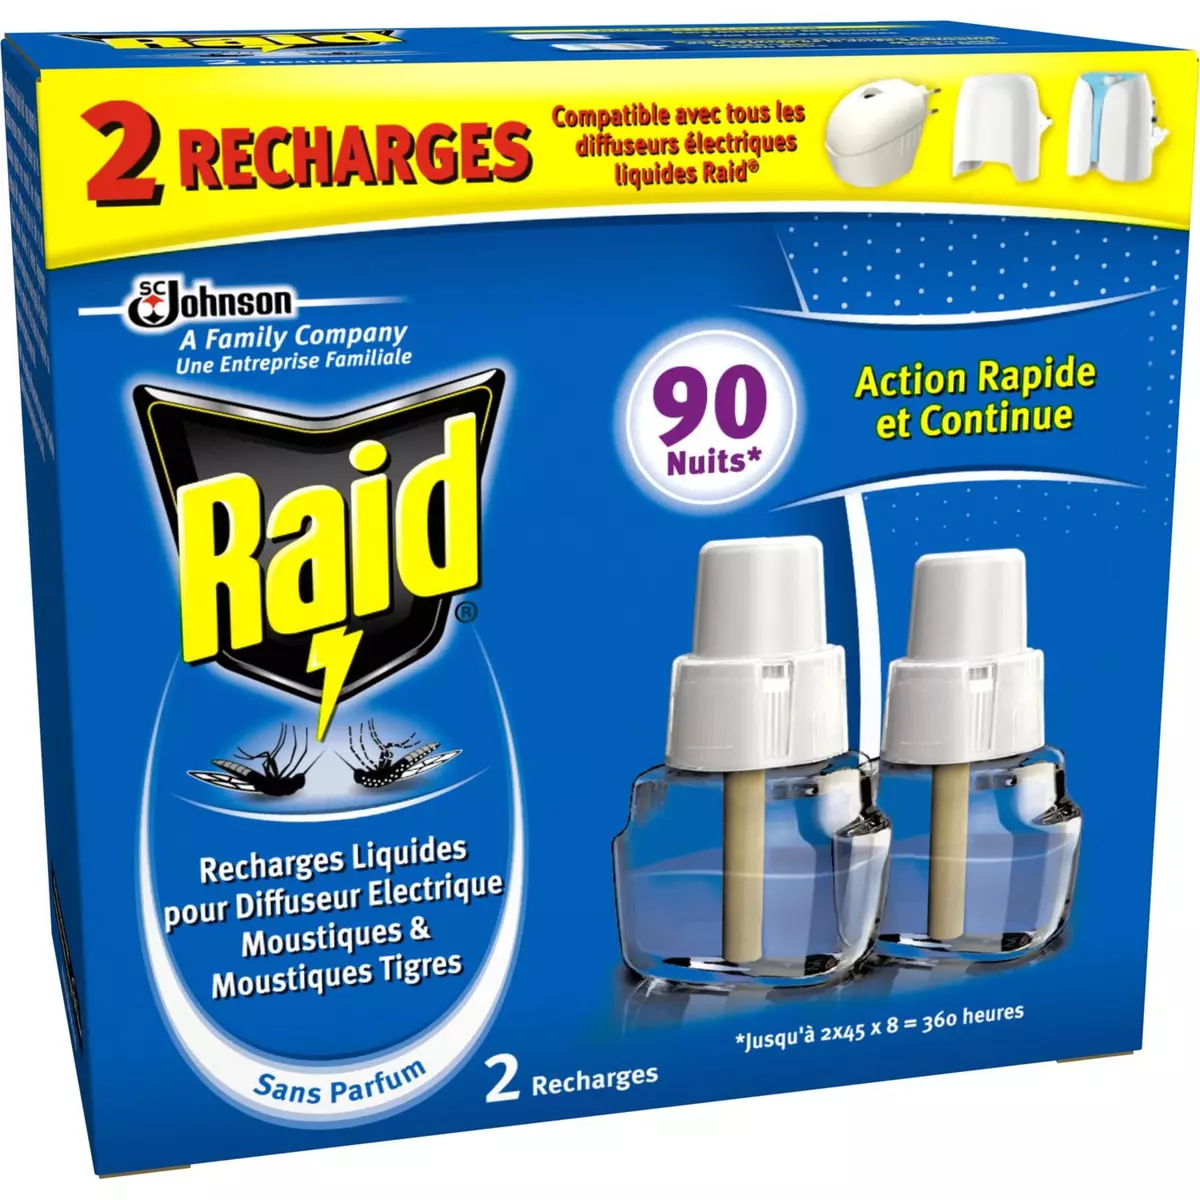 RAID Recharge diffuseur électrique anti-moustiques & moustiques-tigres efficace 90 nuits 2 recharges